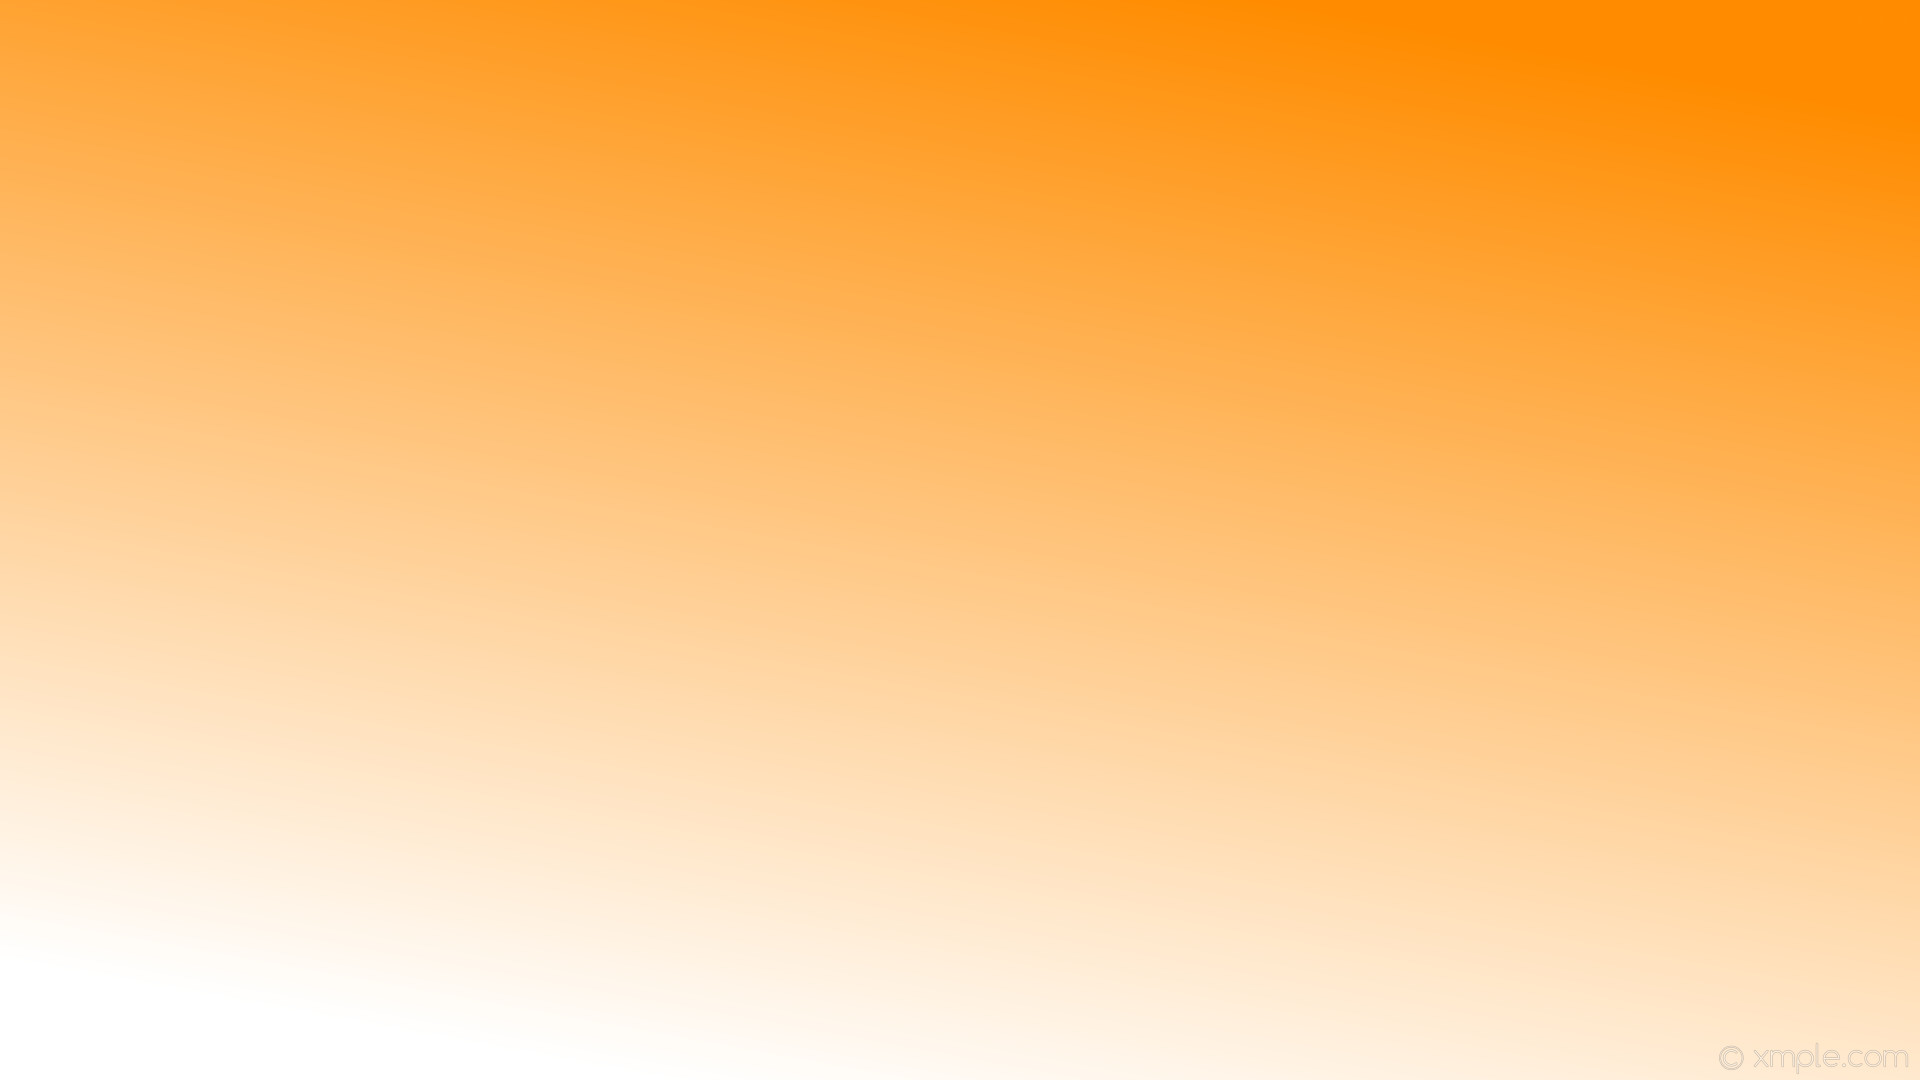 Wallpaper linear gradient orange white dark orange #ff8c00 #ffffff 60